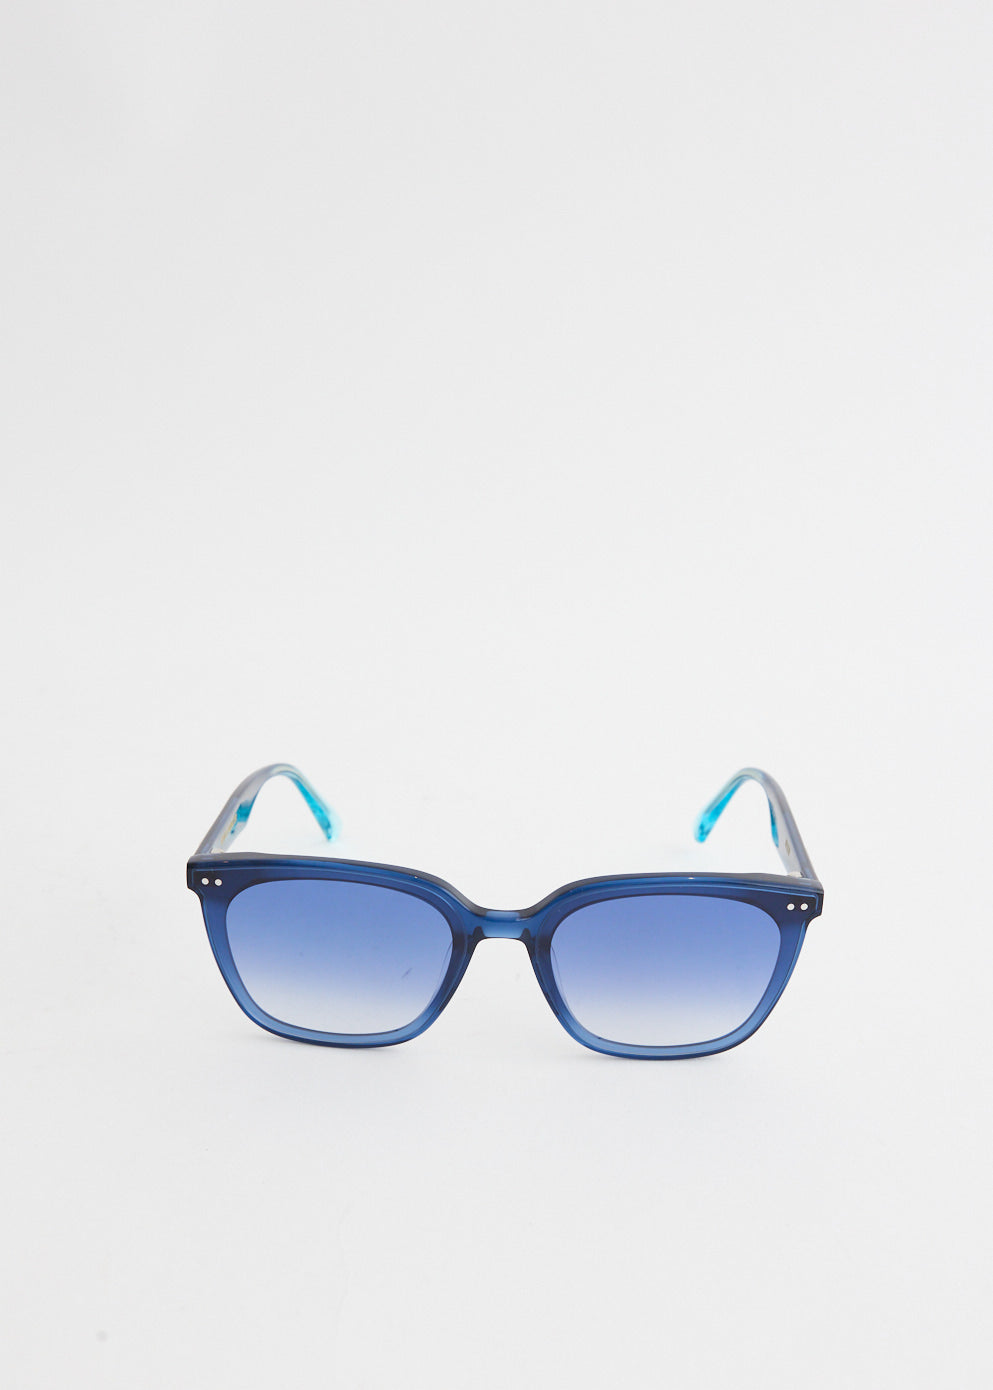 Heizer-NC2 Sunglasses